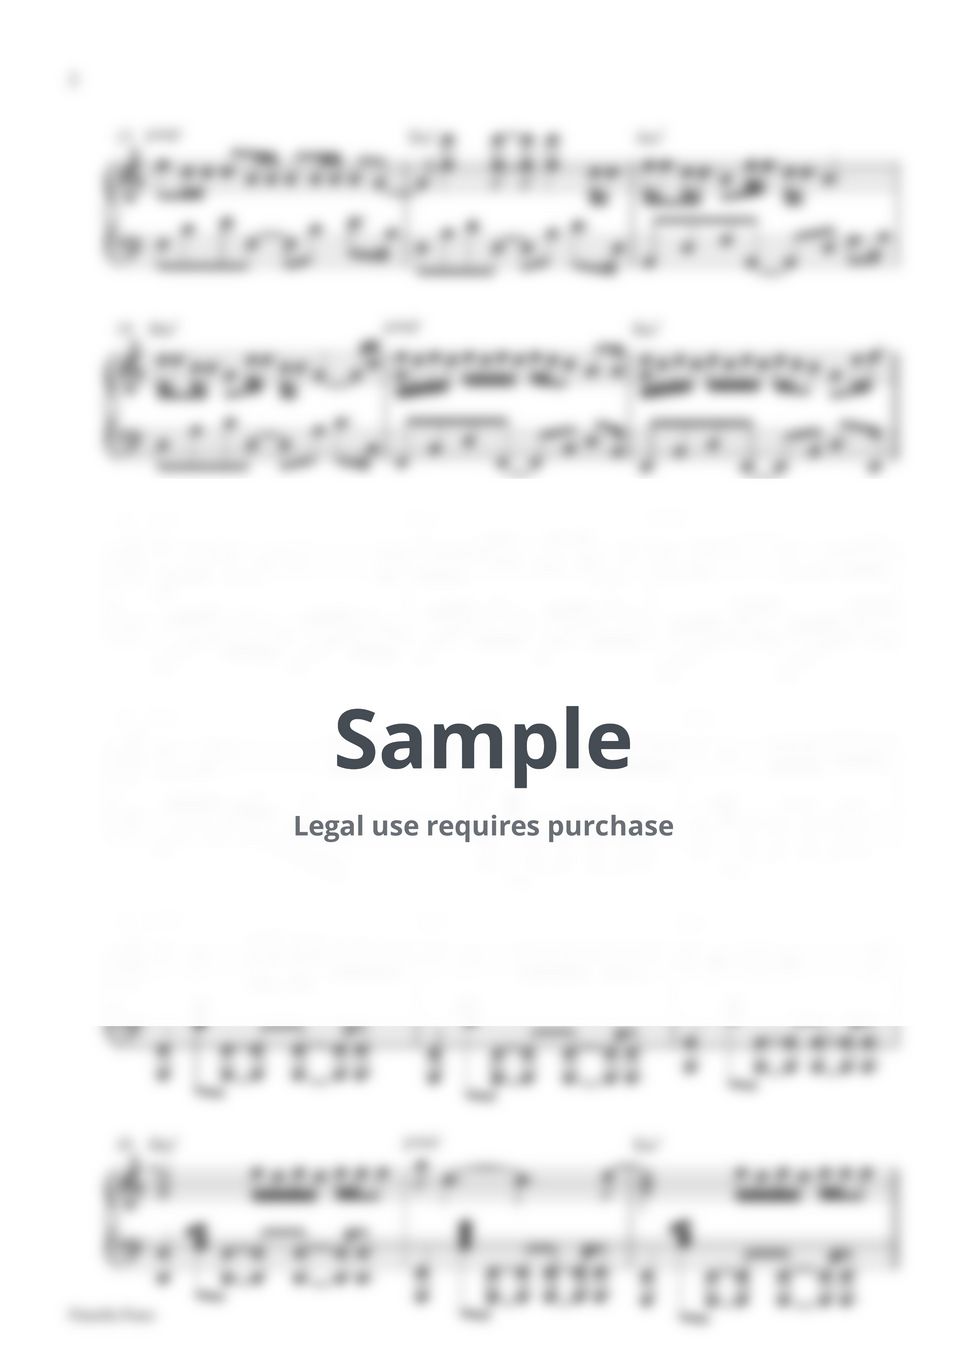 LE SSERAFIM - EASY (Piano Sheet) by Pianella Piano